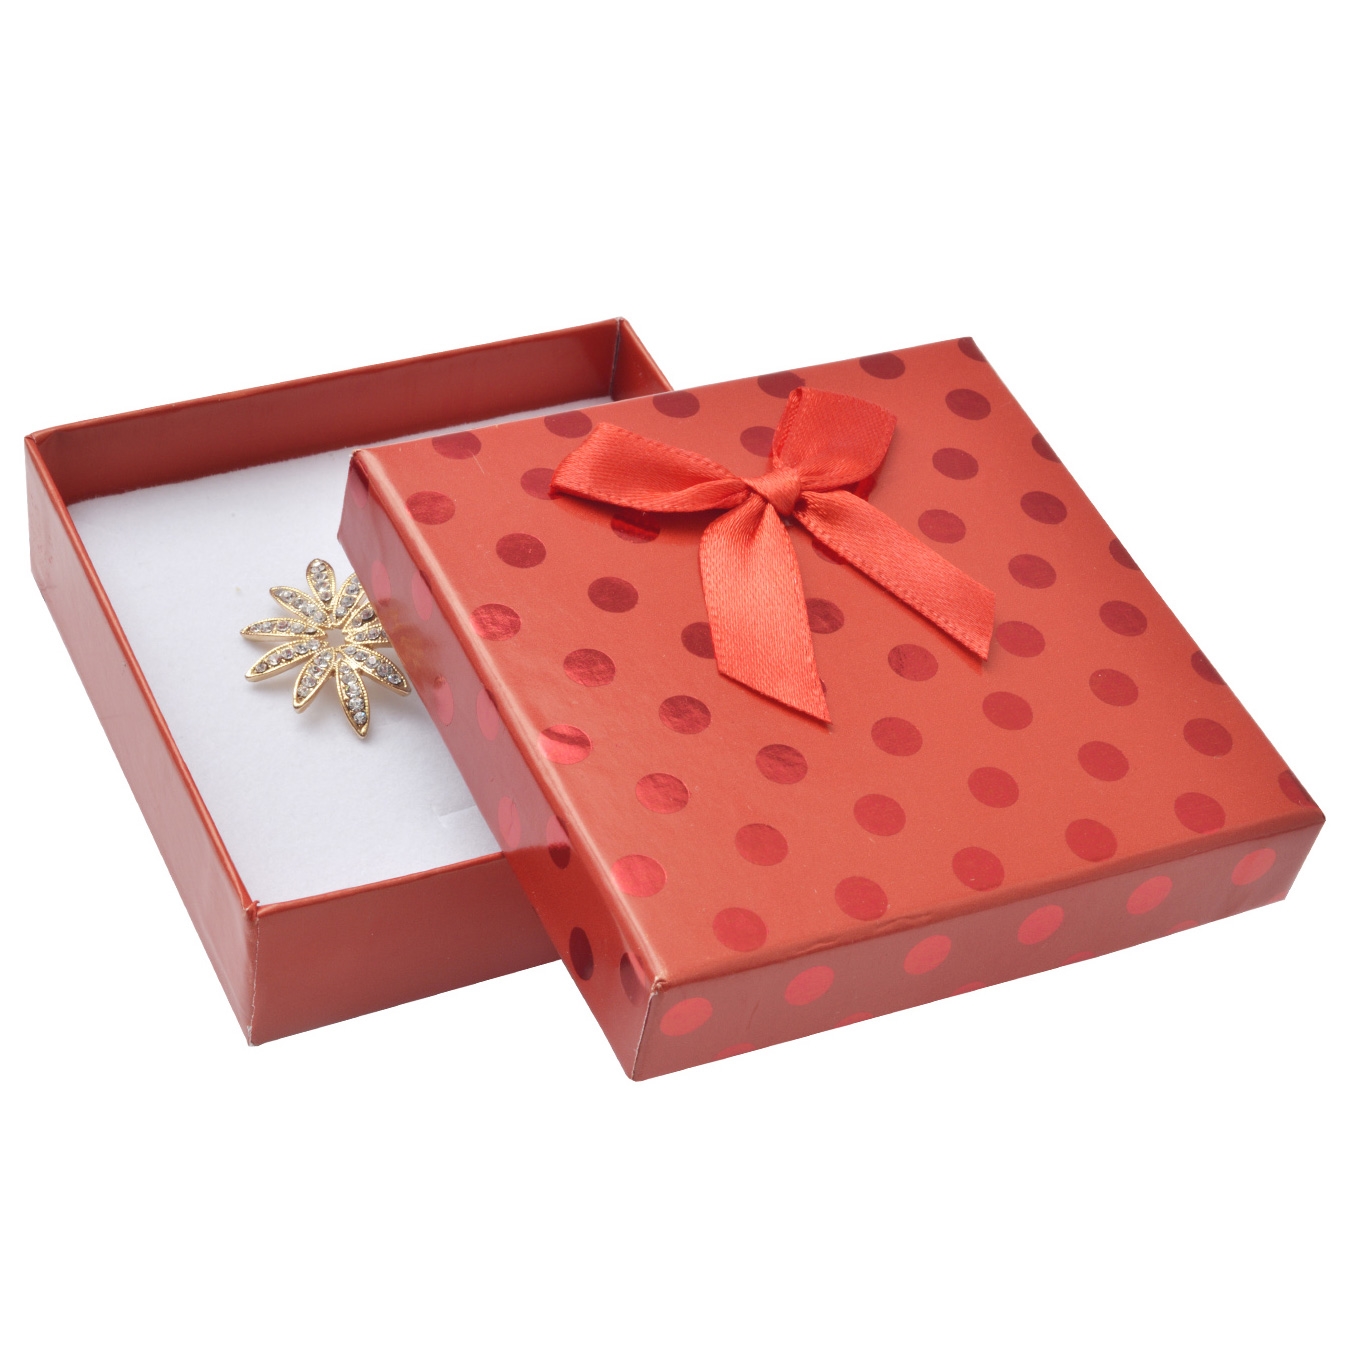 Darčeková krabička na súpravu, červená s lesklými bodkami